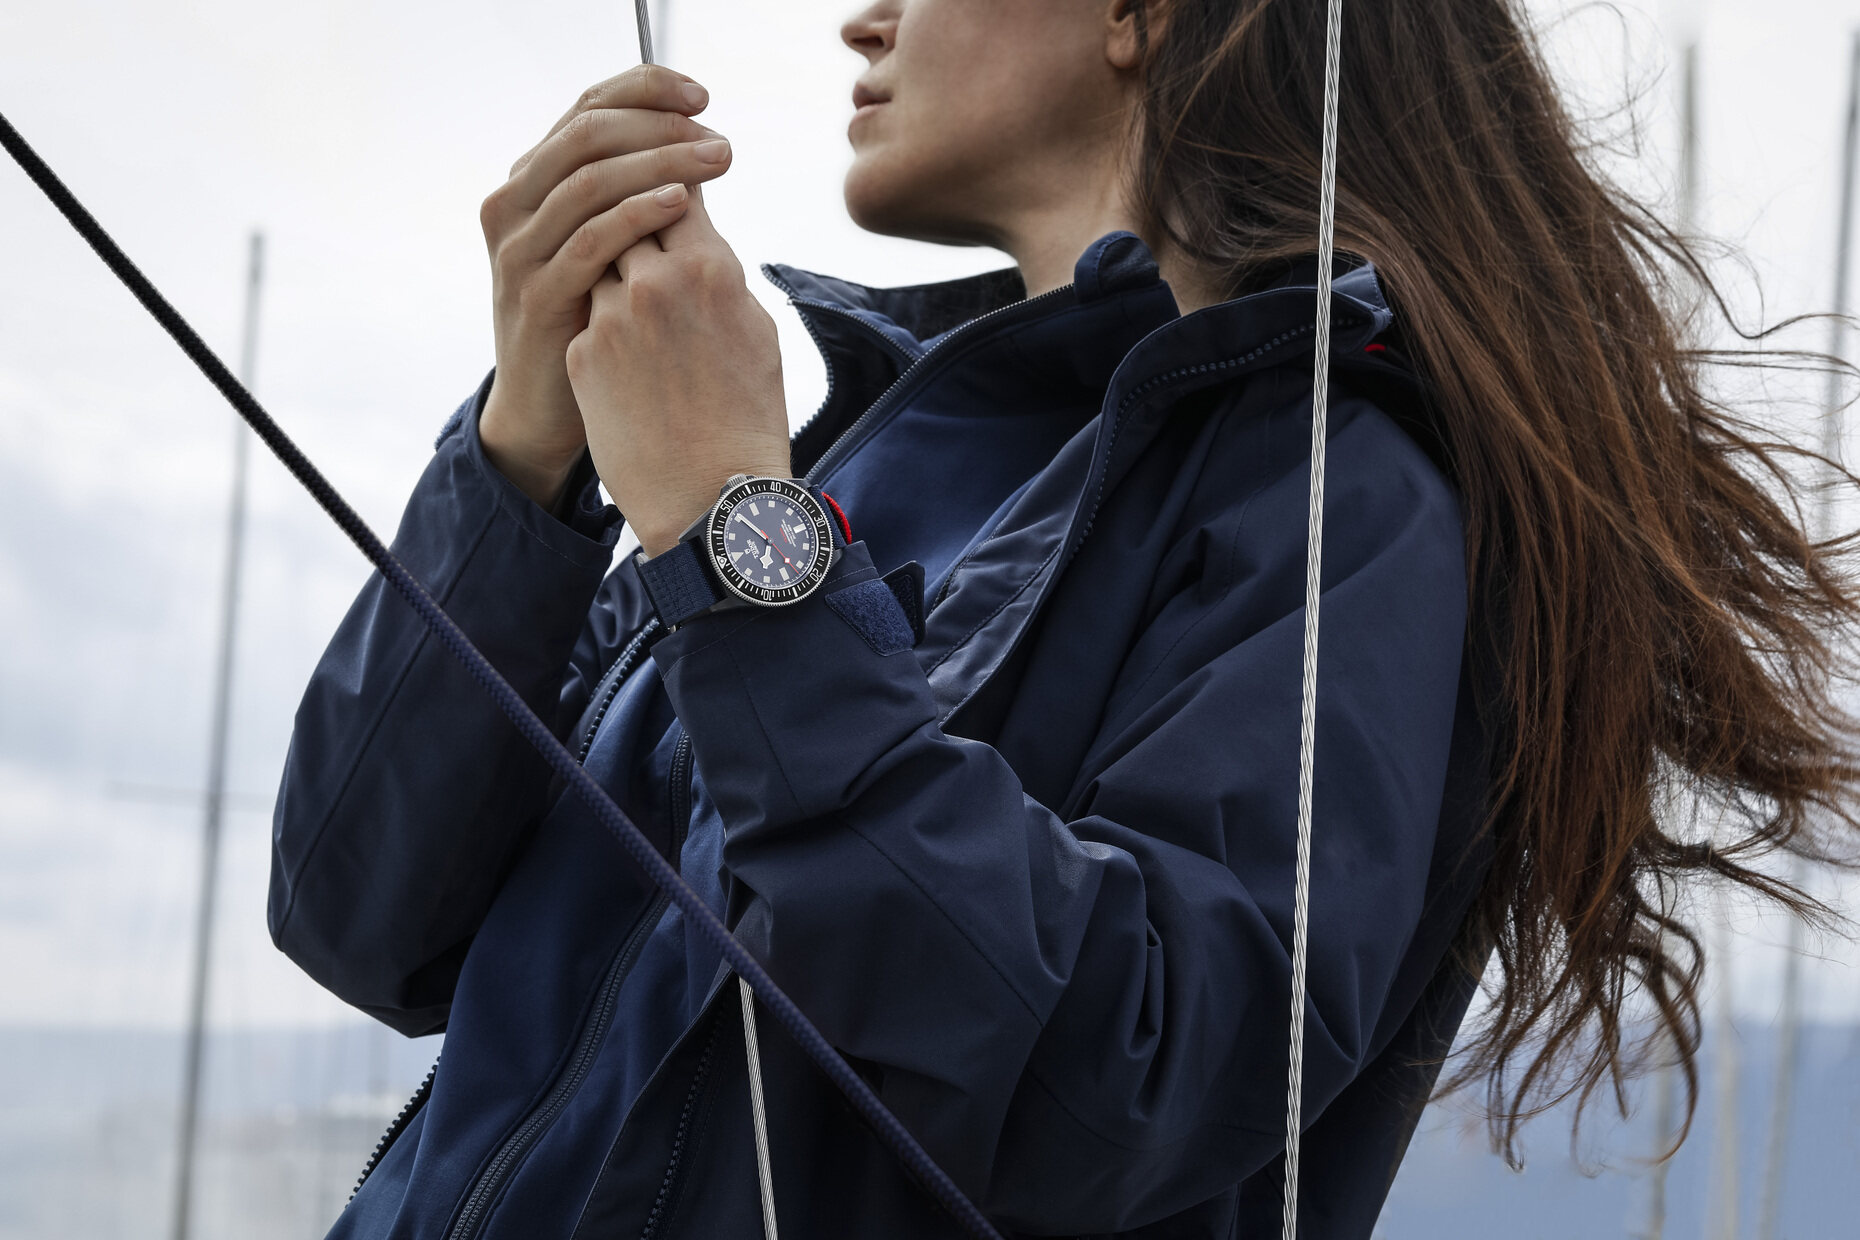 Tudor 以全新Pelagos FXD & FXD Chrono阿靈基紅牛帆船隊特別版腕錶⛵向首次跨界合作致敬